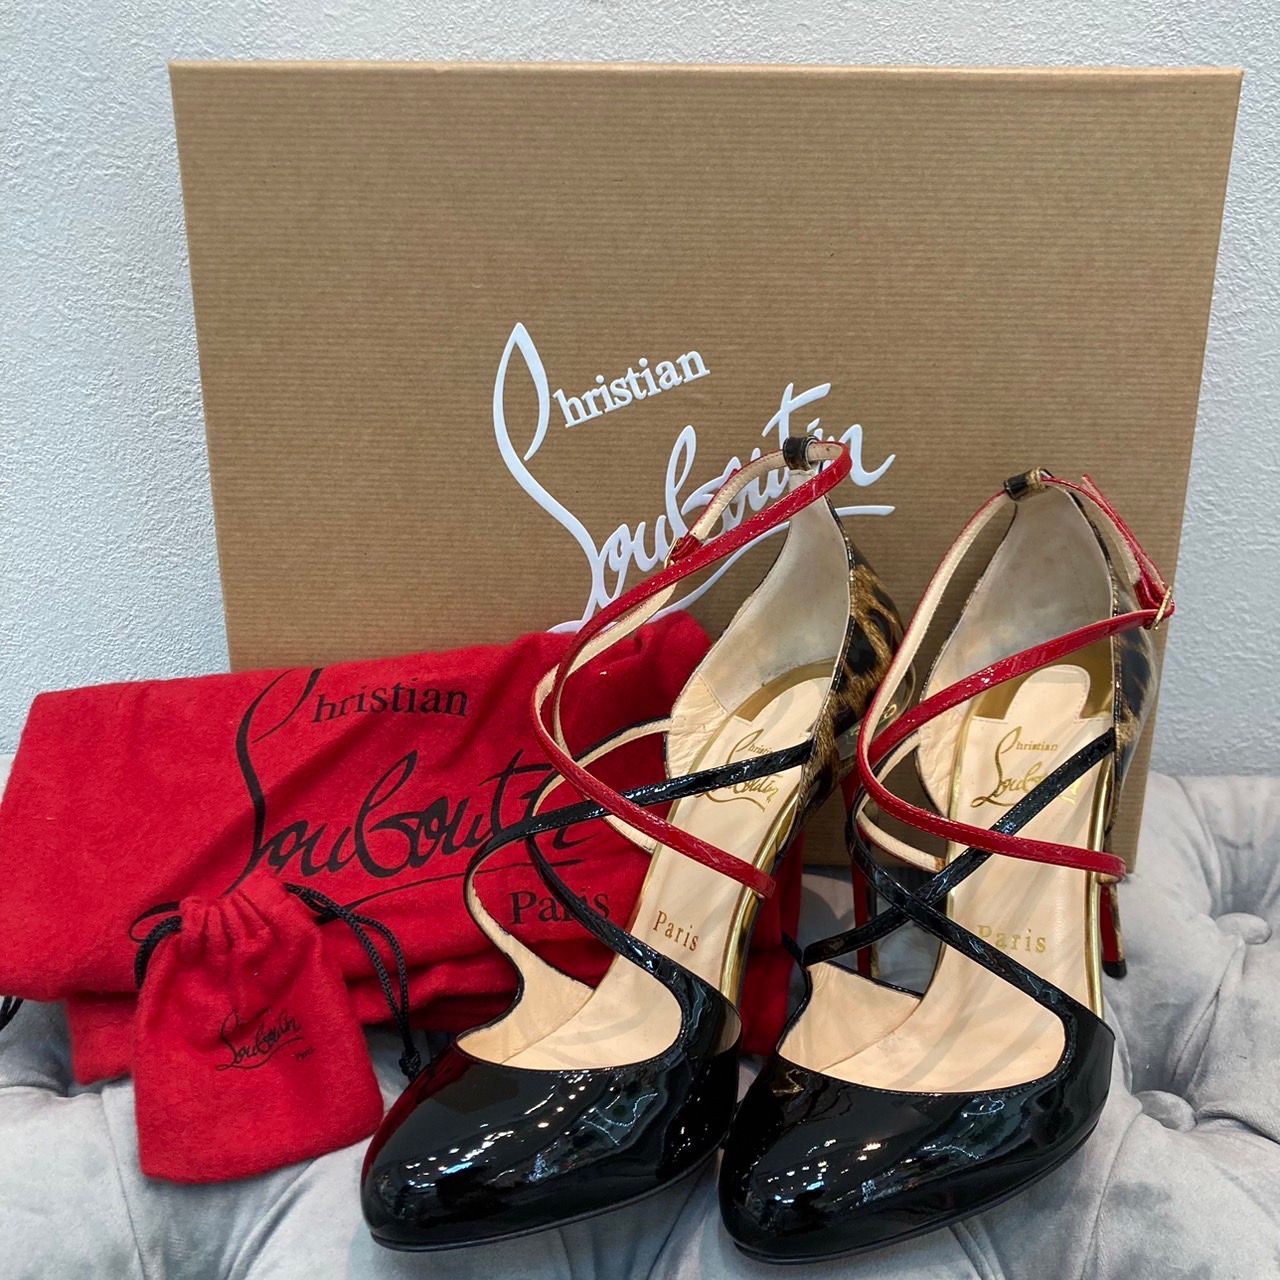 【全額返金保証・送料無料】ルブタンのパンプス・正規品・美品・レオパード・豹柄Rozenaの靴一覧